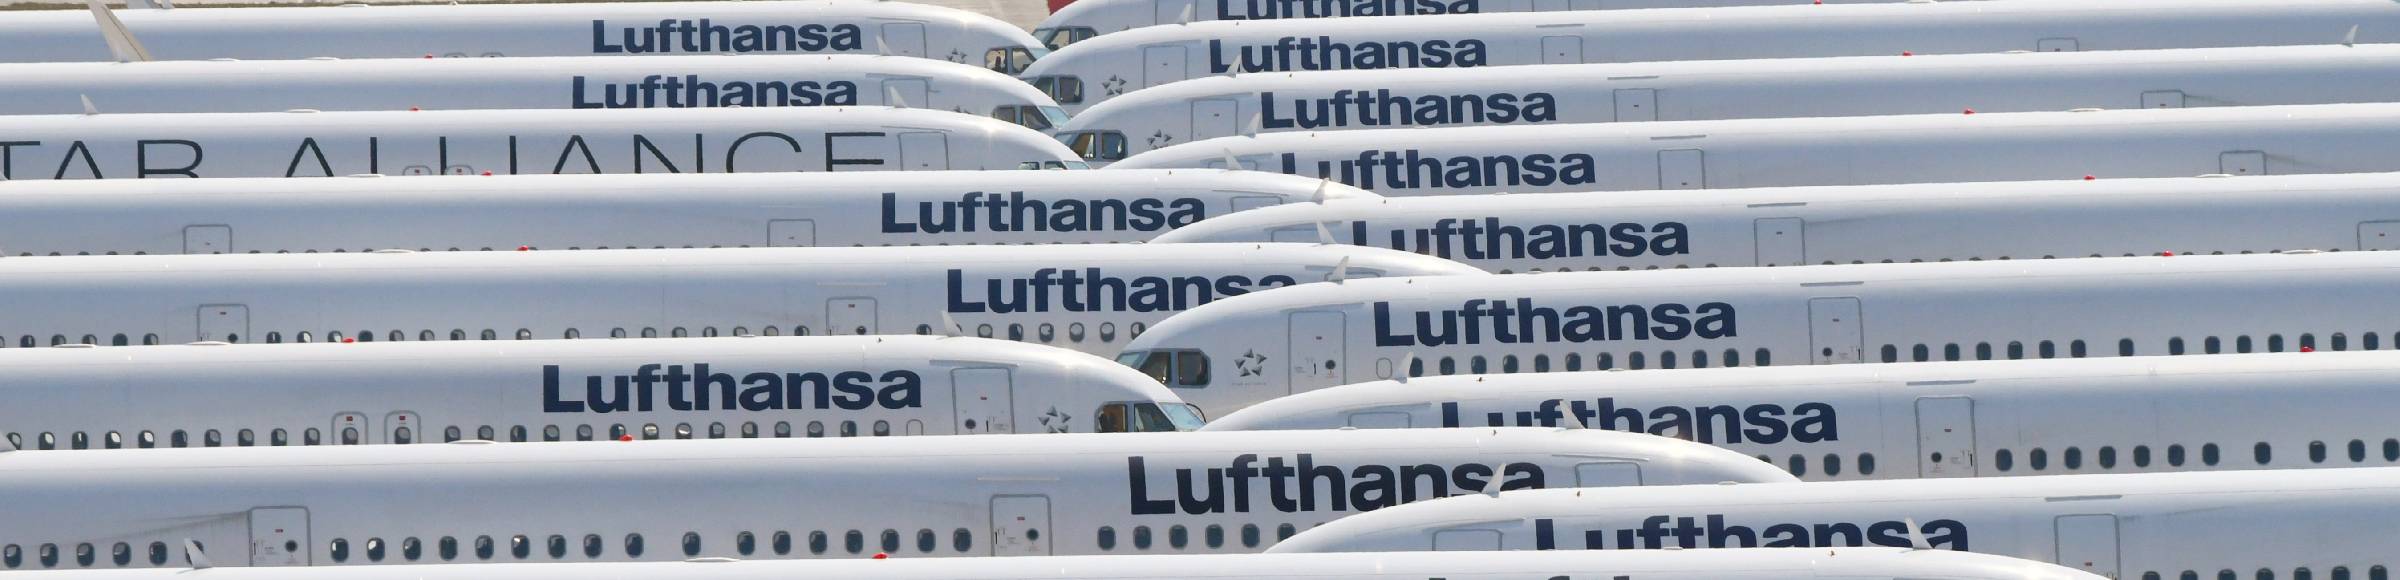 Krisenbedingt stillgelegte Passagierflugzeuge der Fluggesellschaft Lufthansa auf der Parkposition - Abstellfläche auf dem Flughafen BER in Schönefeld im Bundesland Brandenburg, Deutschland